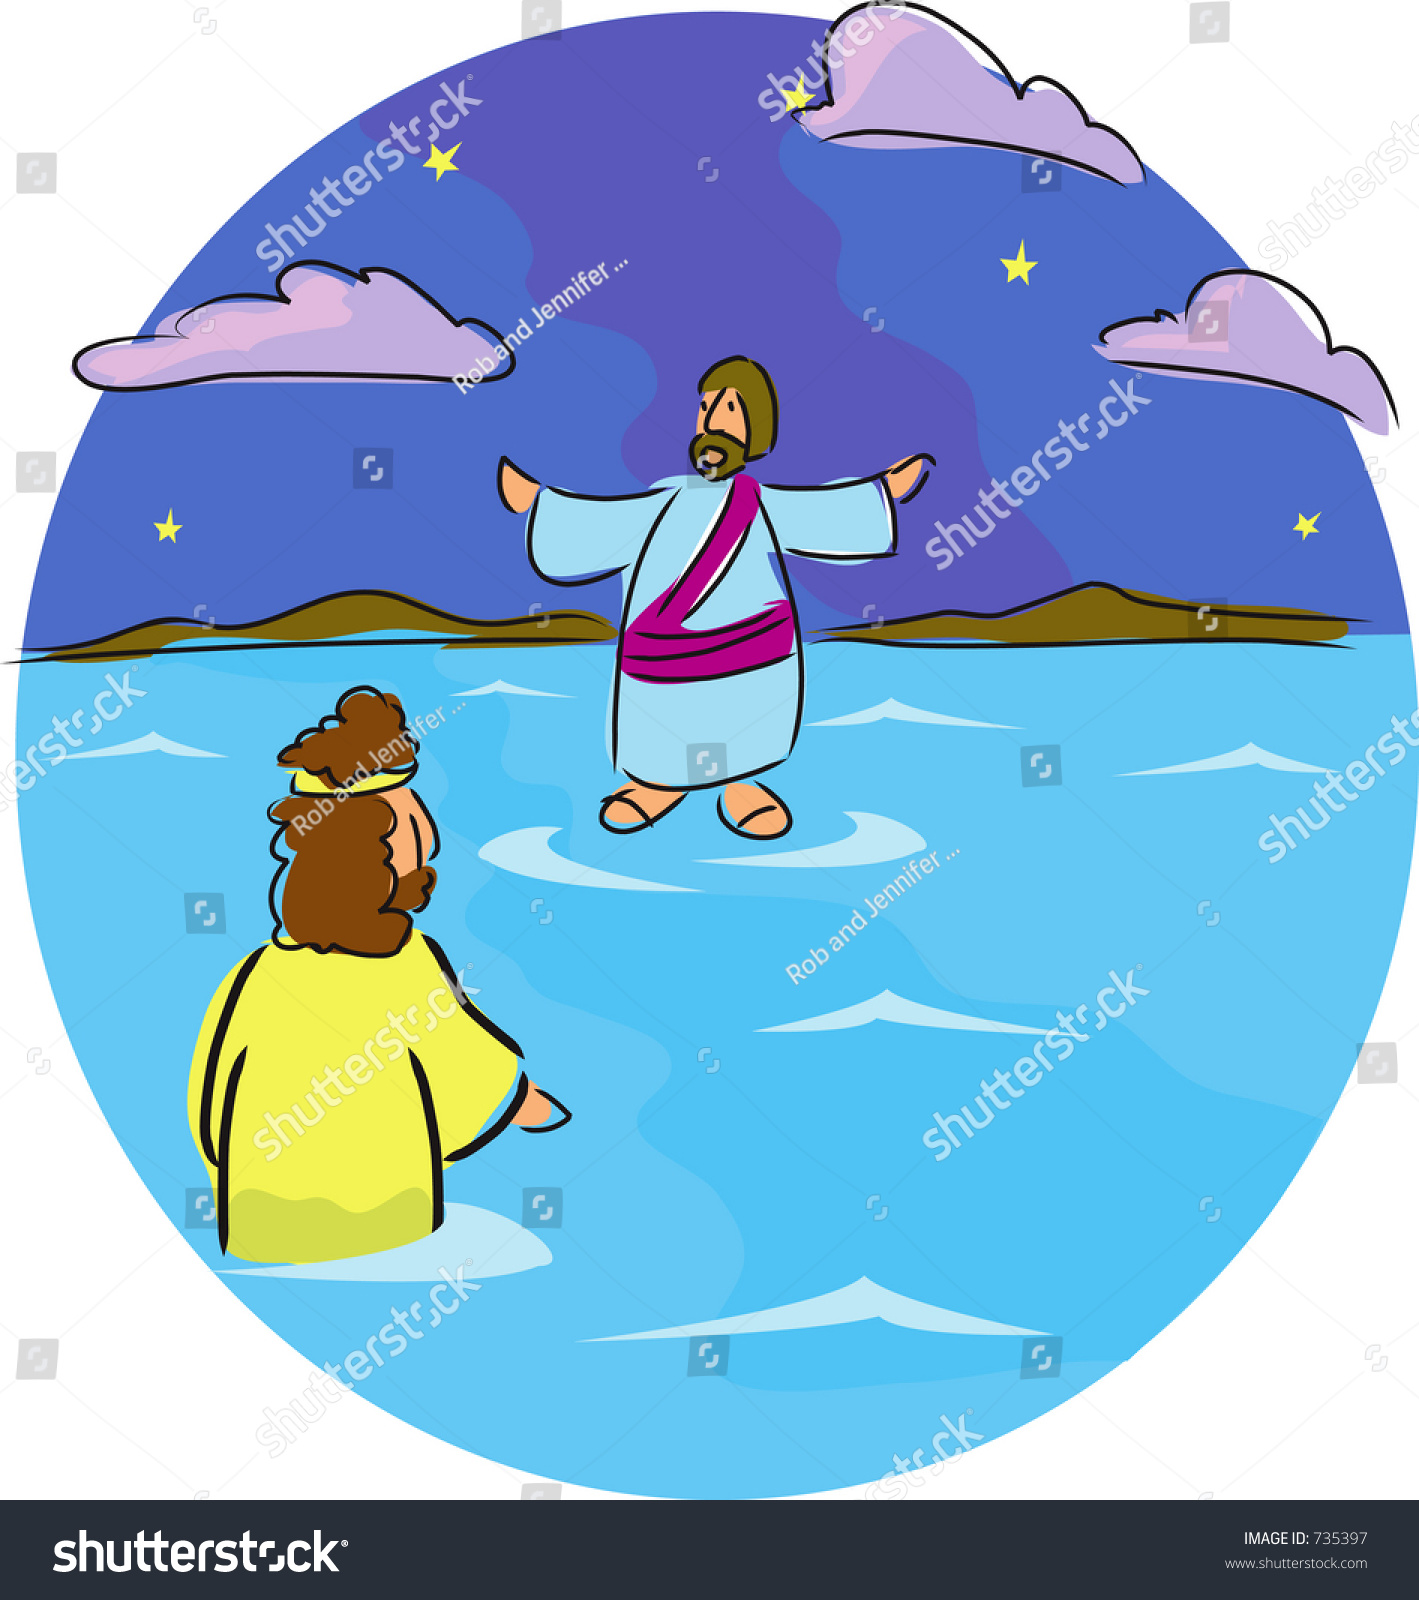 clip art jesus walking on water - photo #9